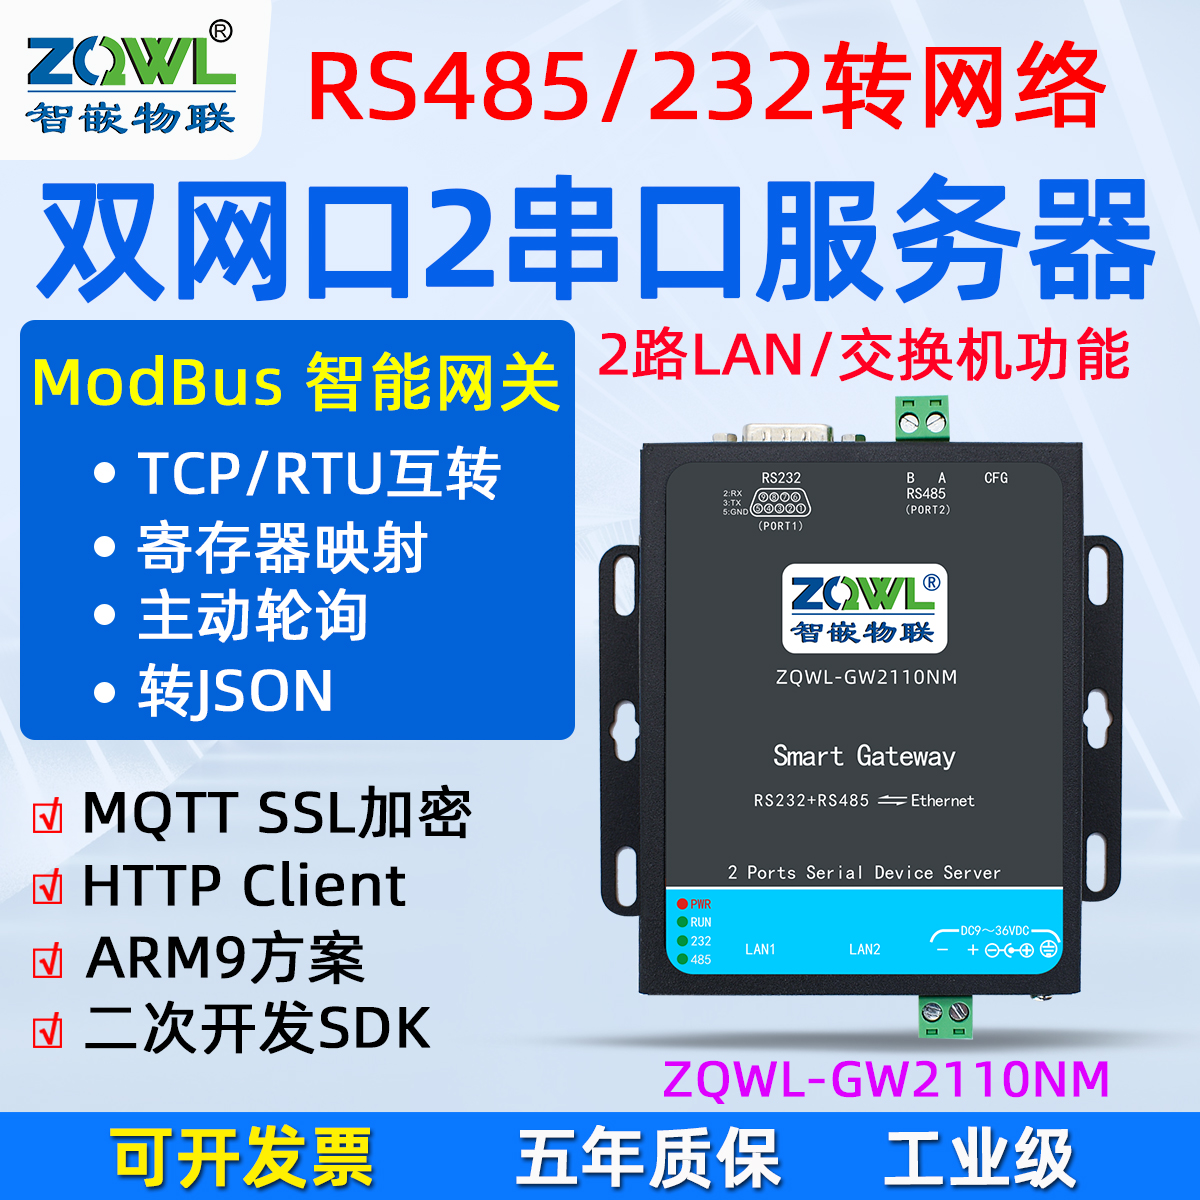 交换机功RS485/232串口服务器ZQWL-GW2110NM